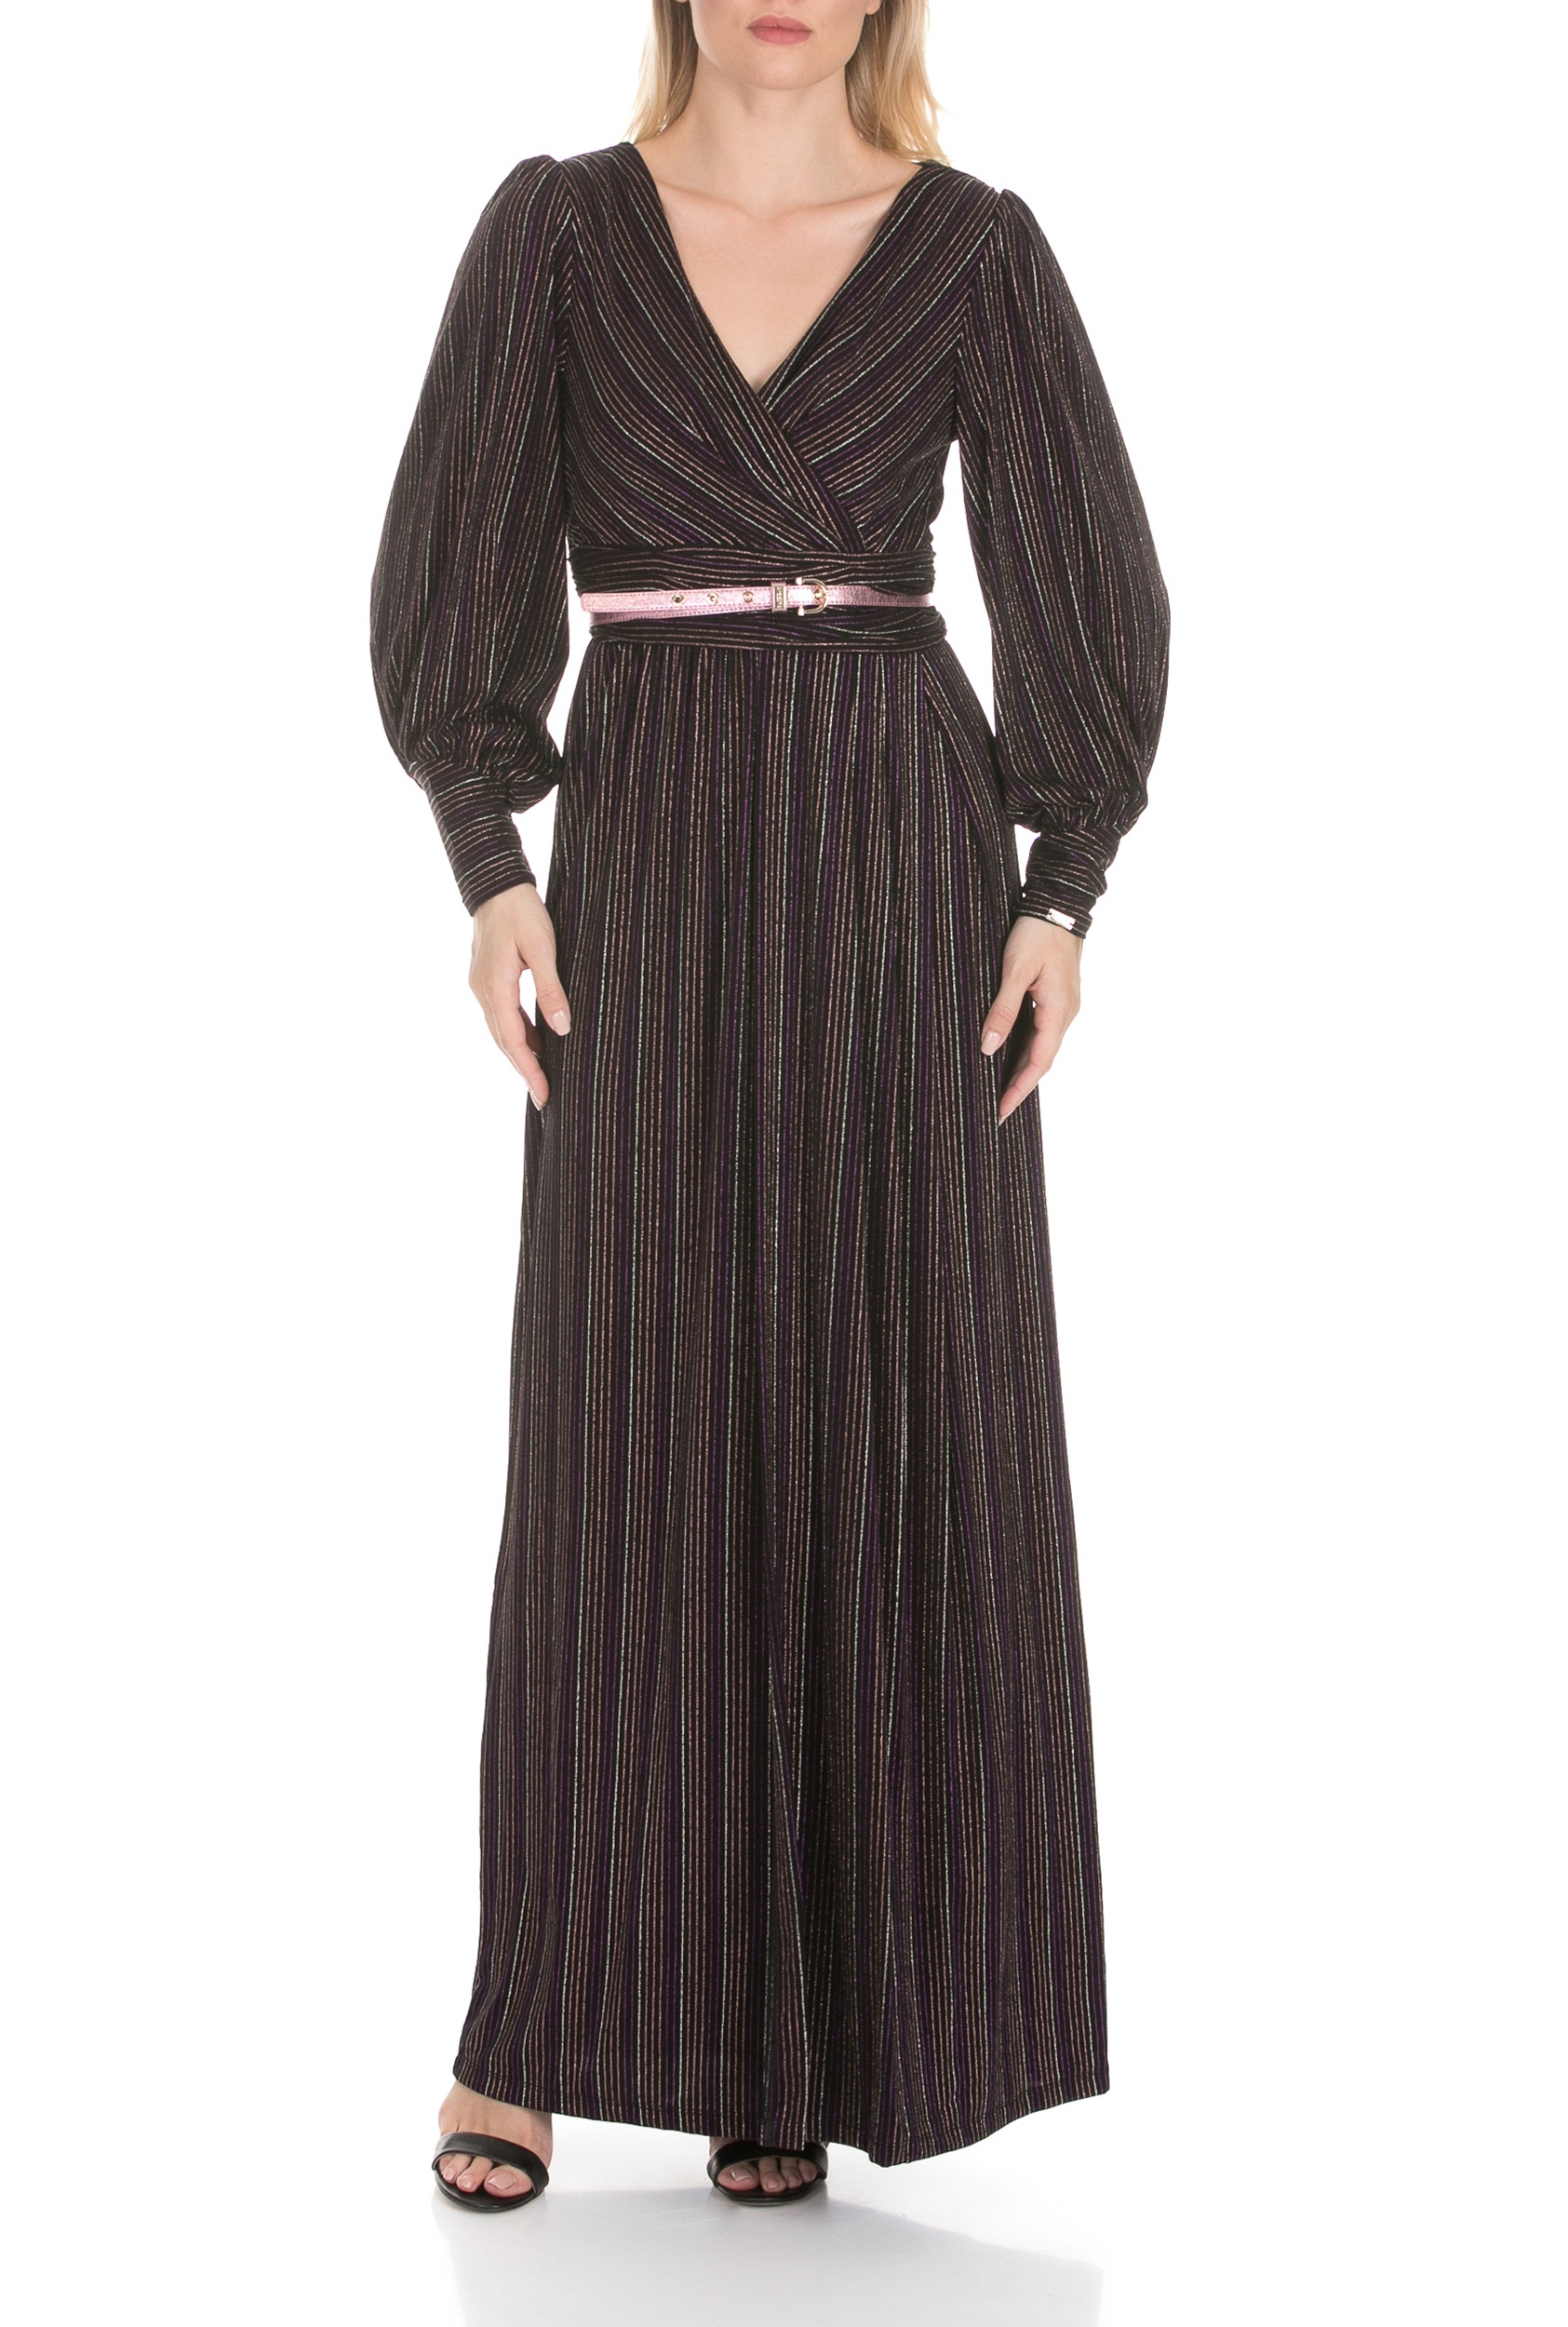 NENETTE Γυναικείο μάξι φόρεμα NENETTE ALCIDE ριγέ